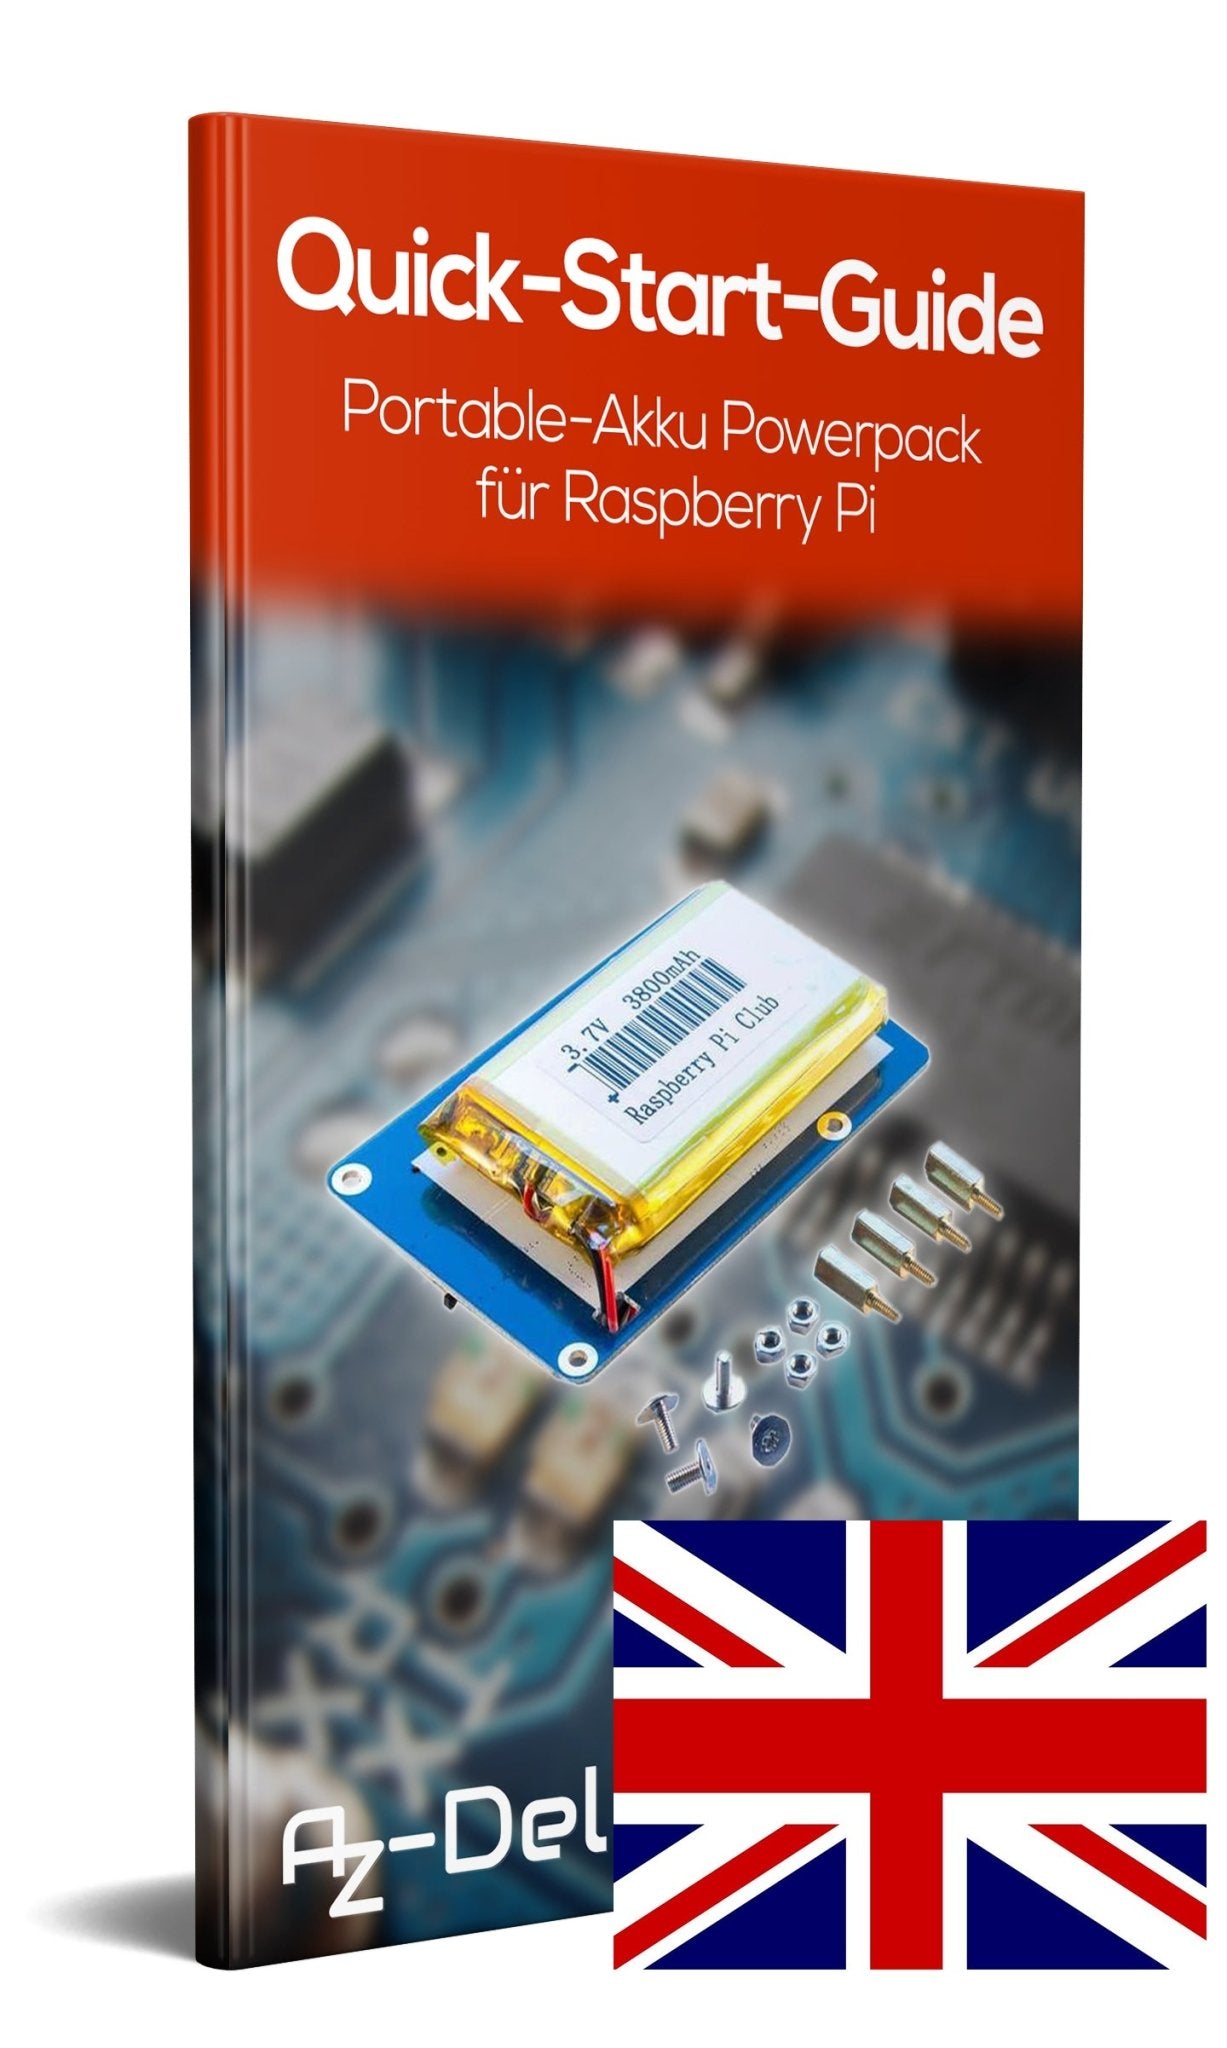 Portable-Akku Powerpack für Raspberry Pi - AZ-Delivery